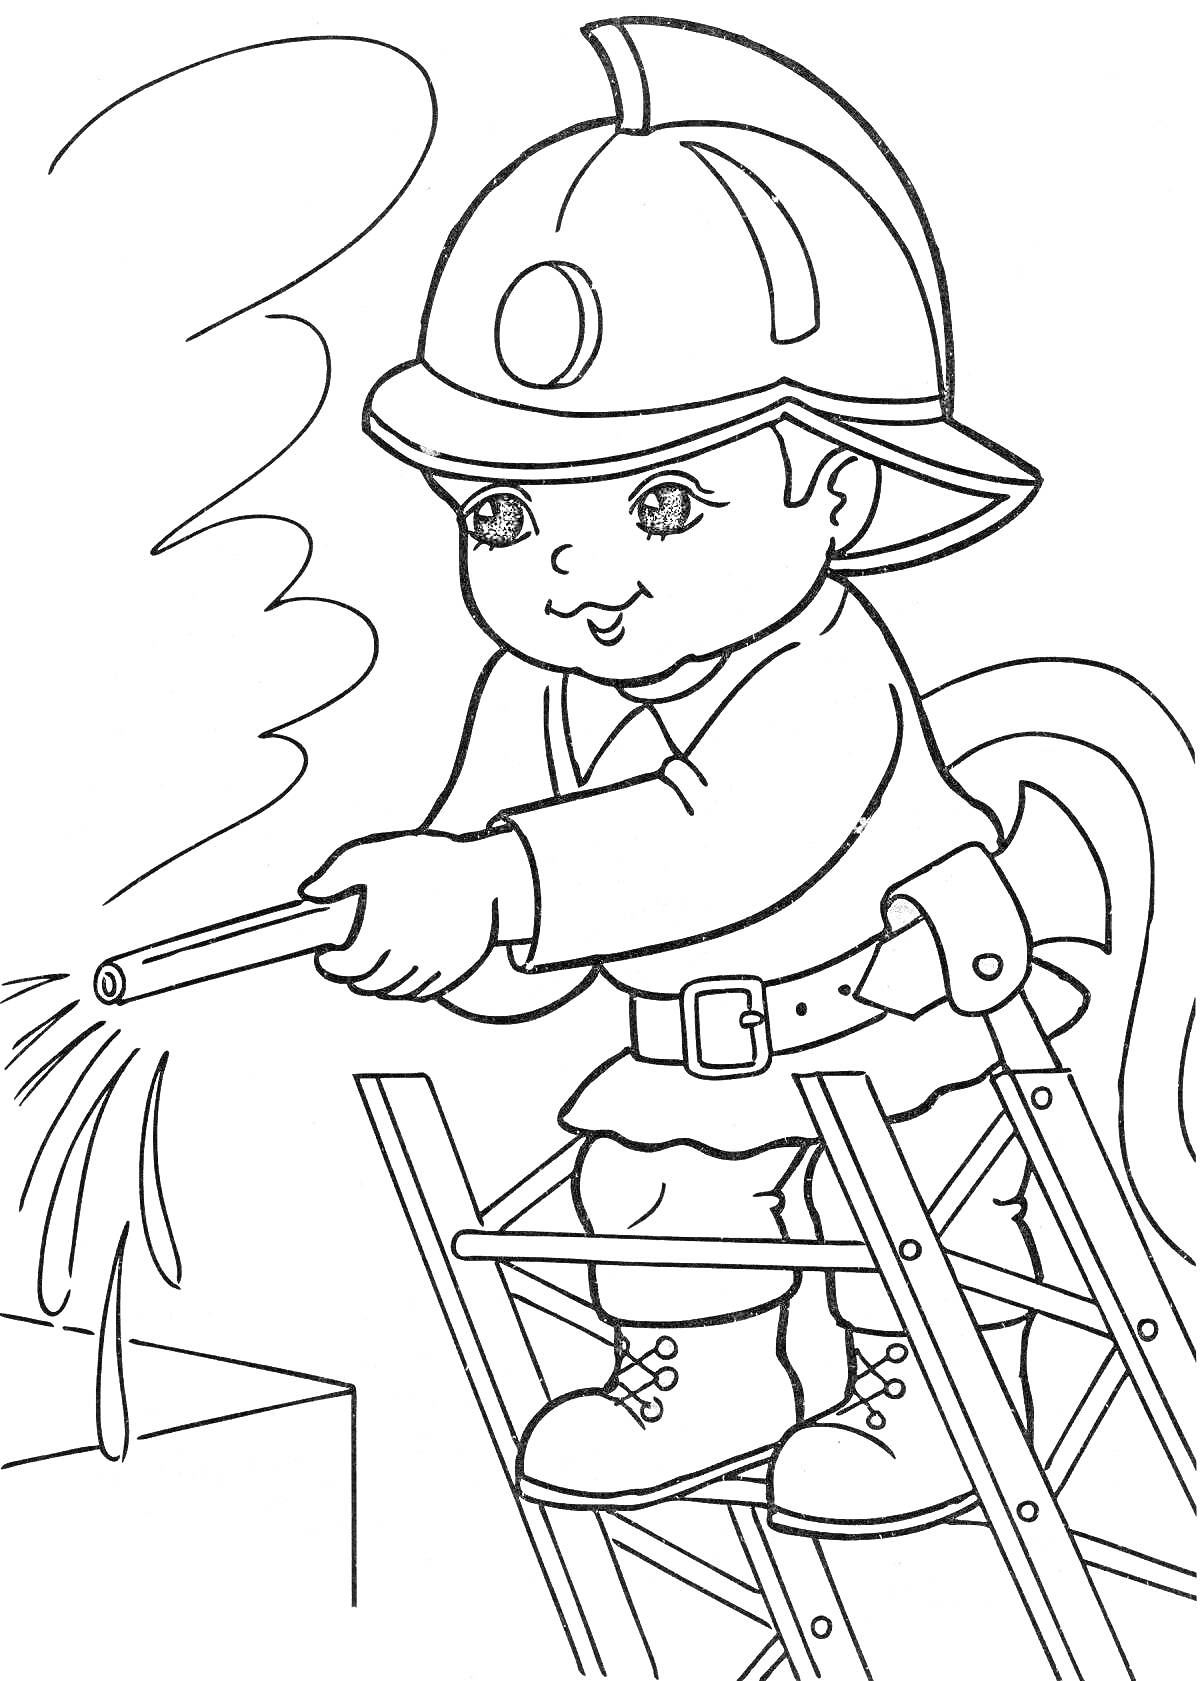 Раскраска Ребёнок-пожарный с шлангом, лестницей и огнем на столе.